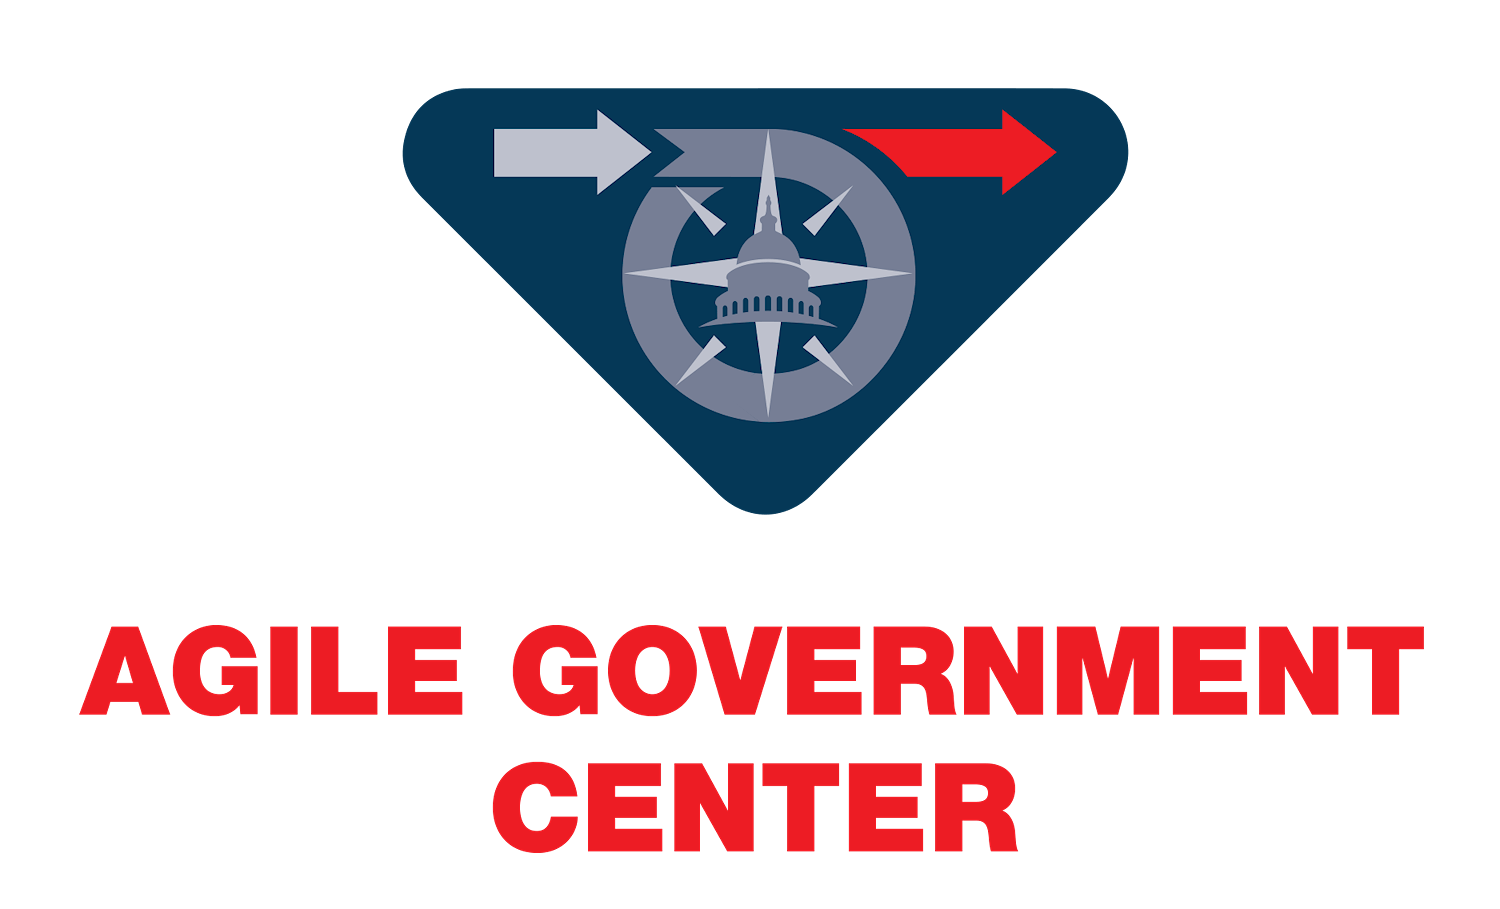 AGILE GOVERNMENT CENTER LOGO Final